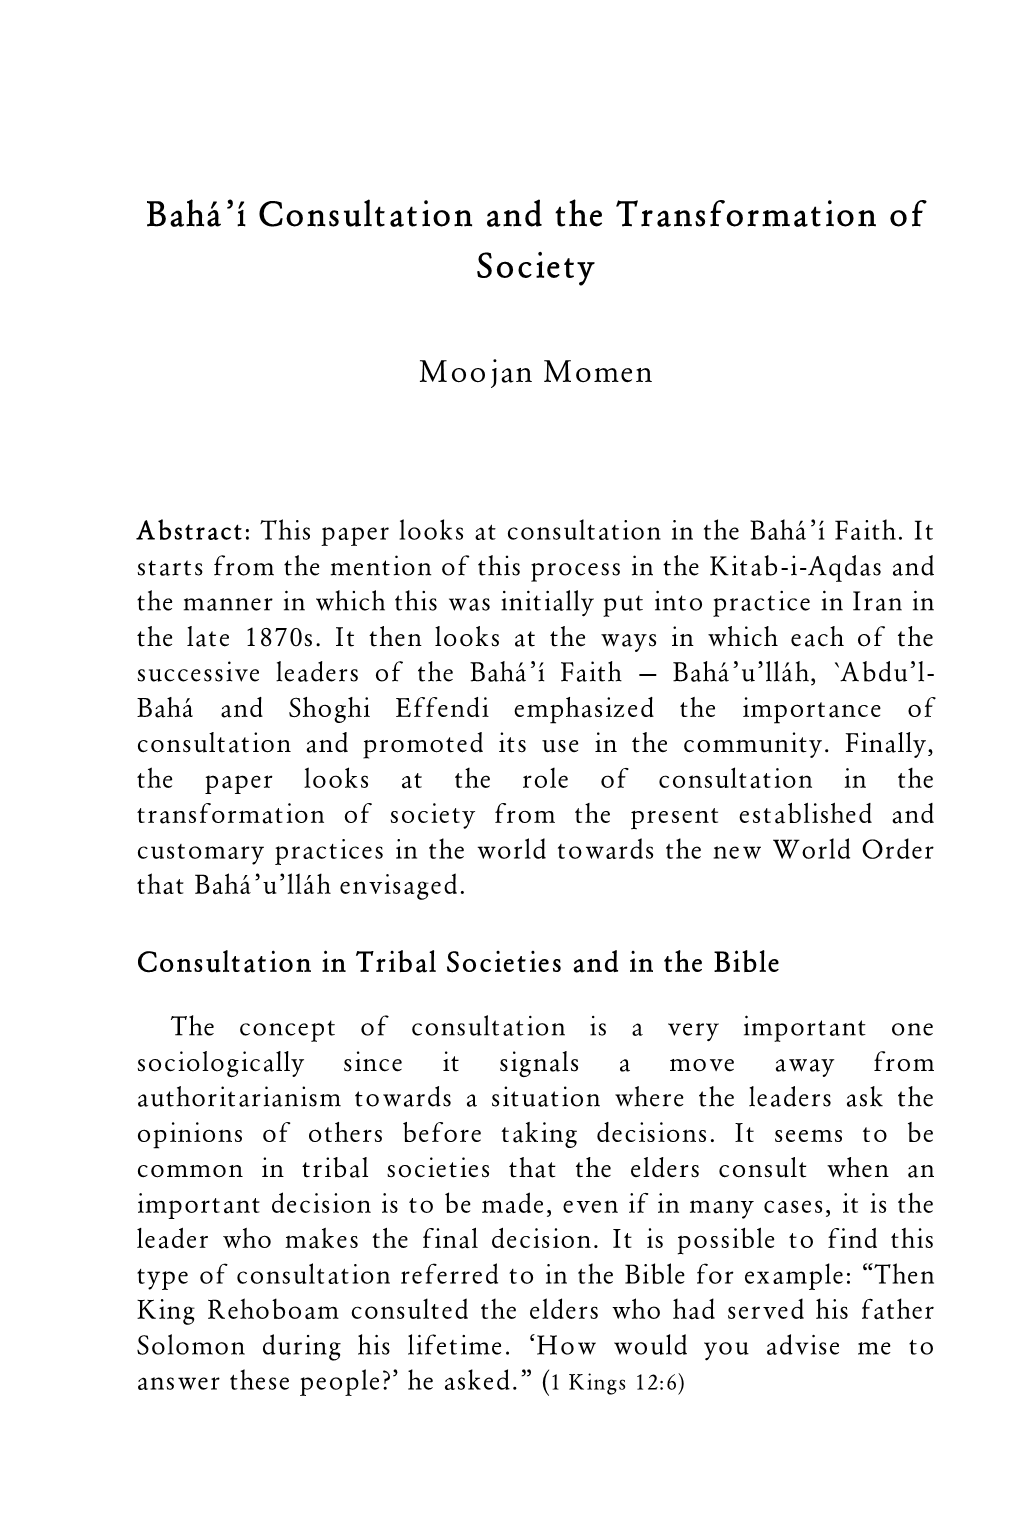 Bahá'í Consultation and the Transformation of Society